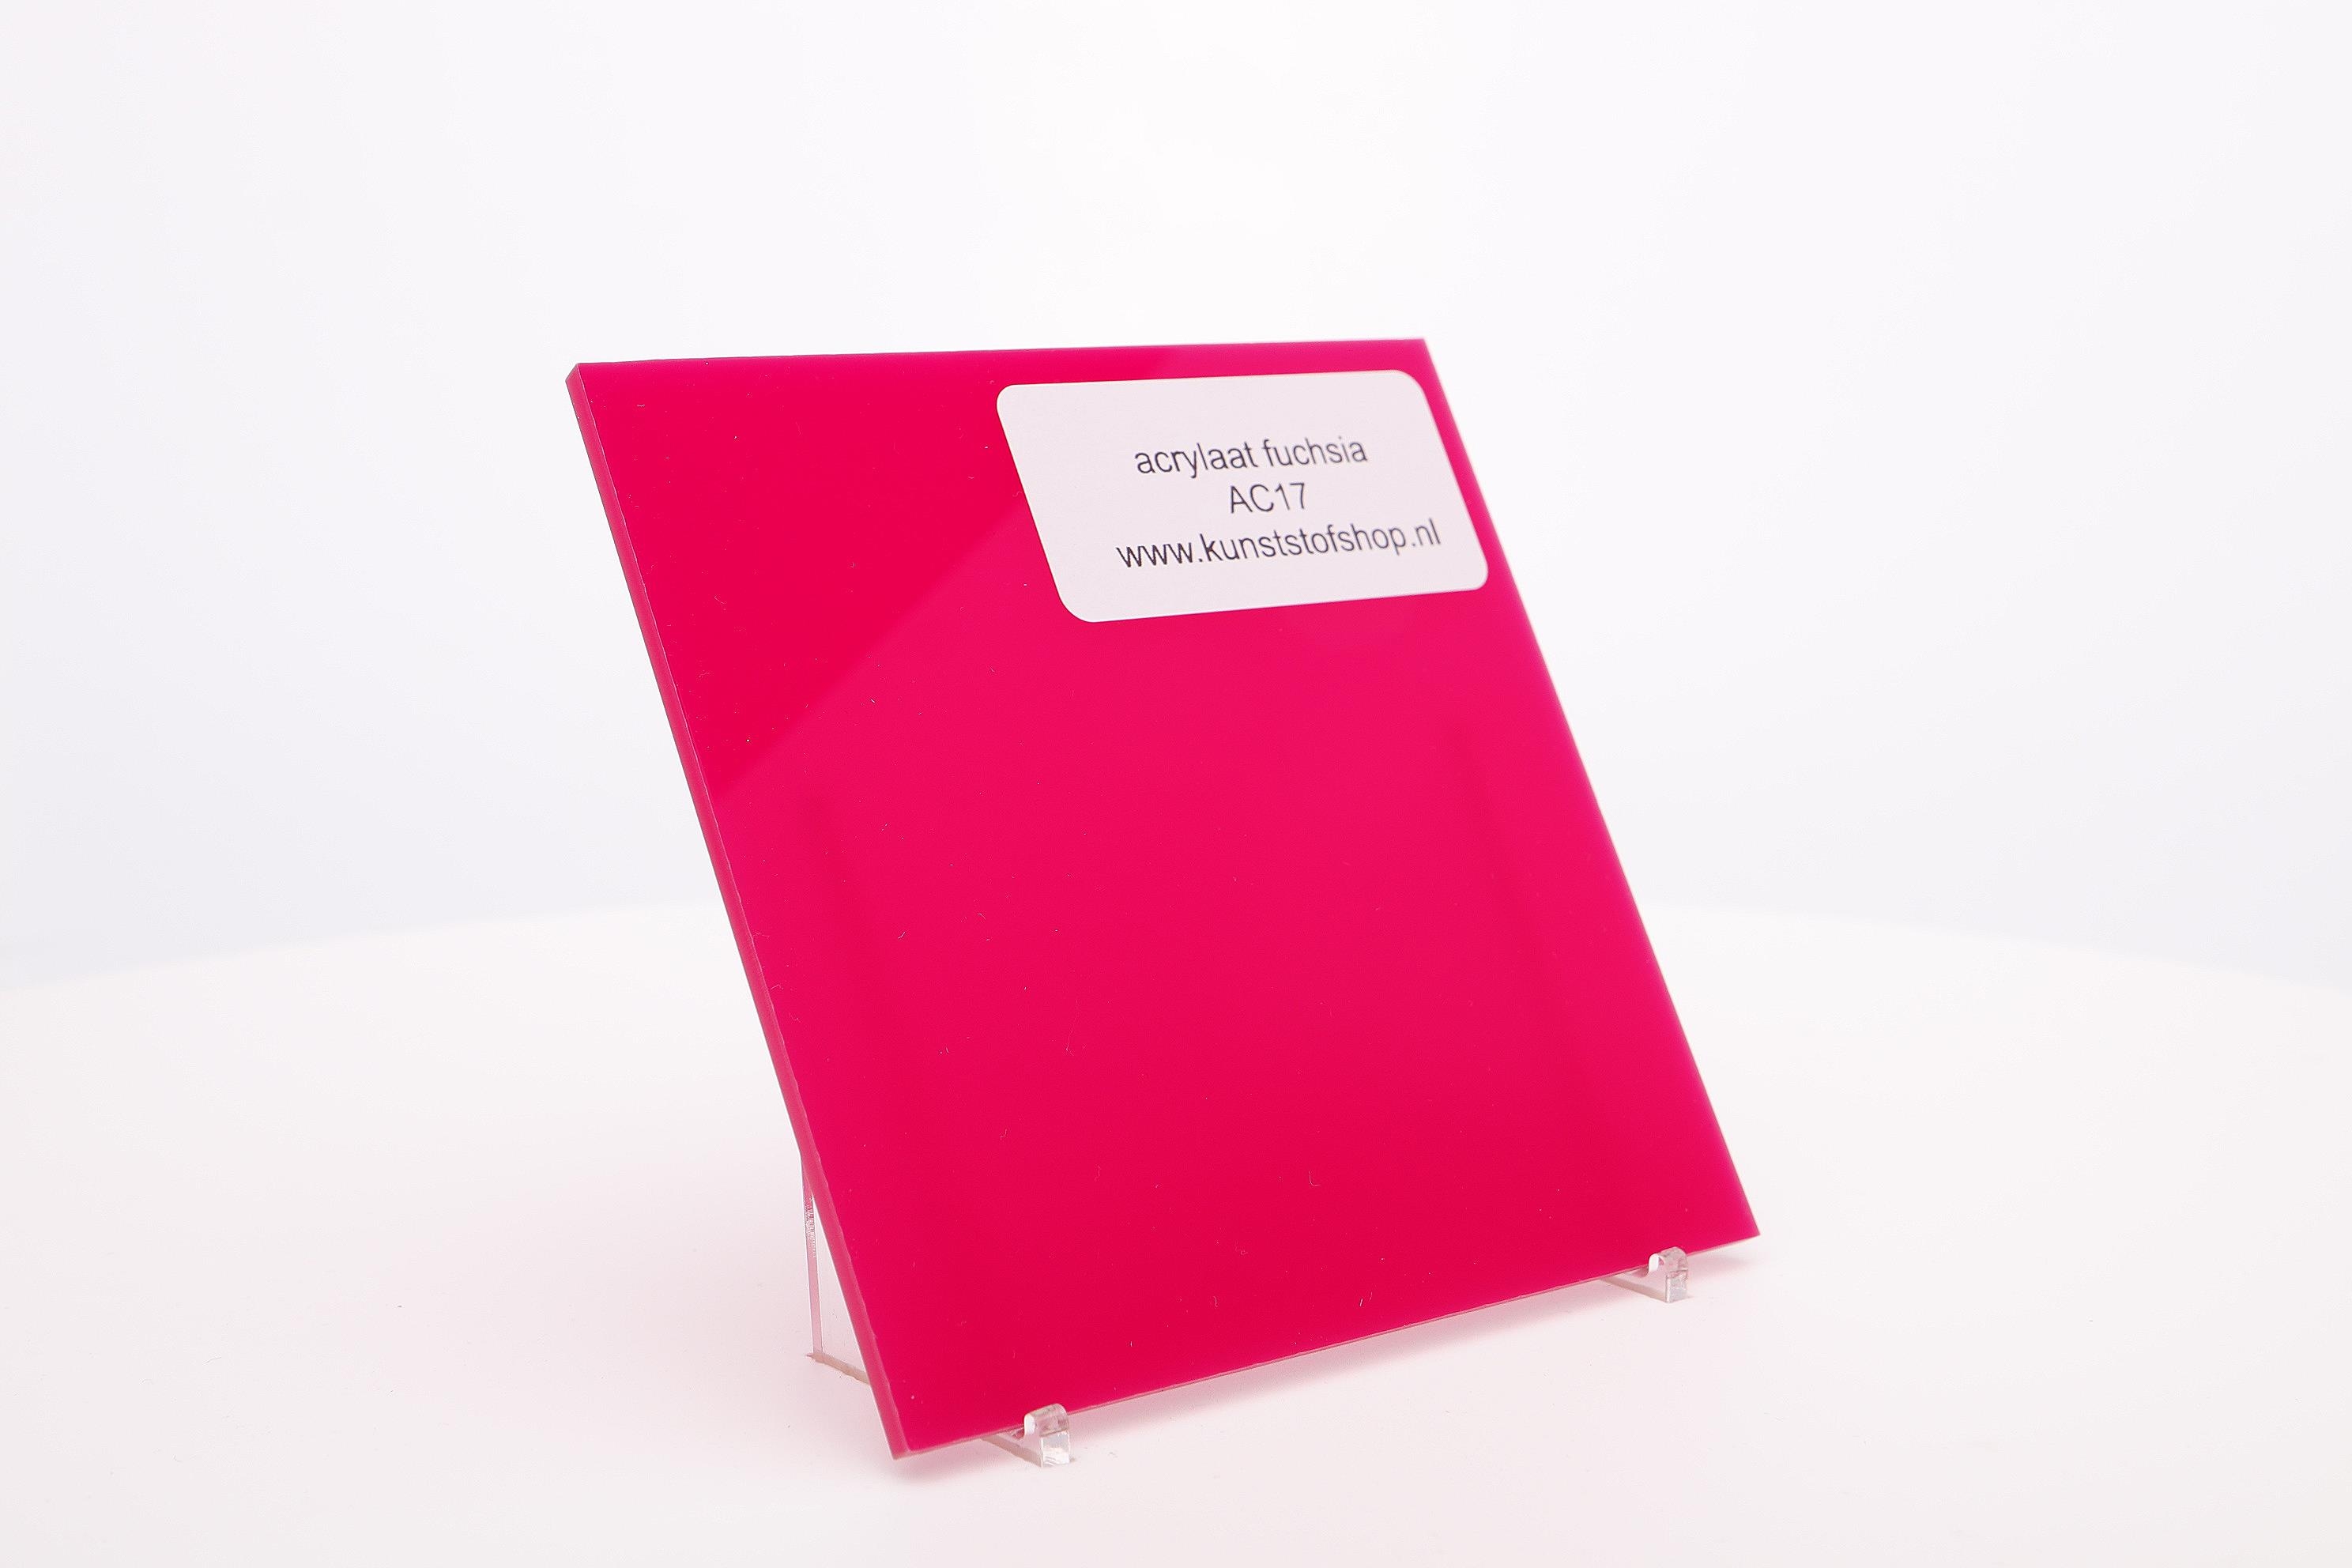 Acrylaat plaat fuschia rood/roze AC 17